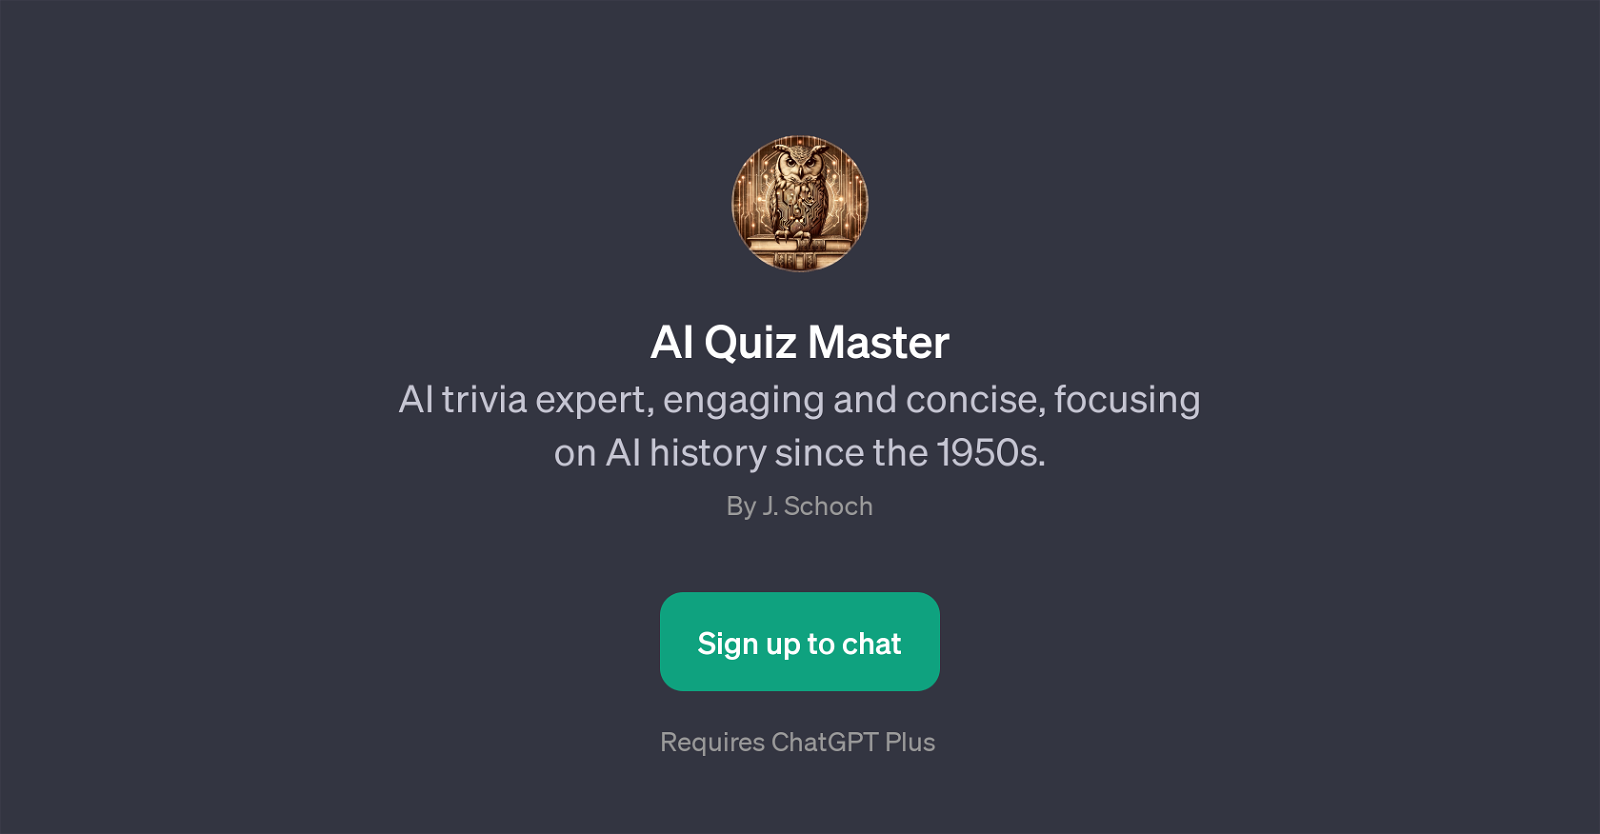 AI Quiz Master website